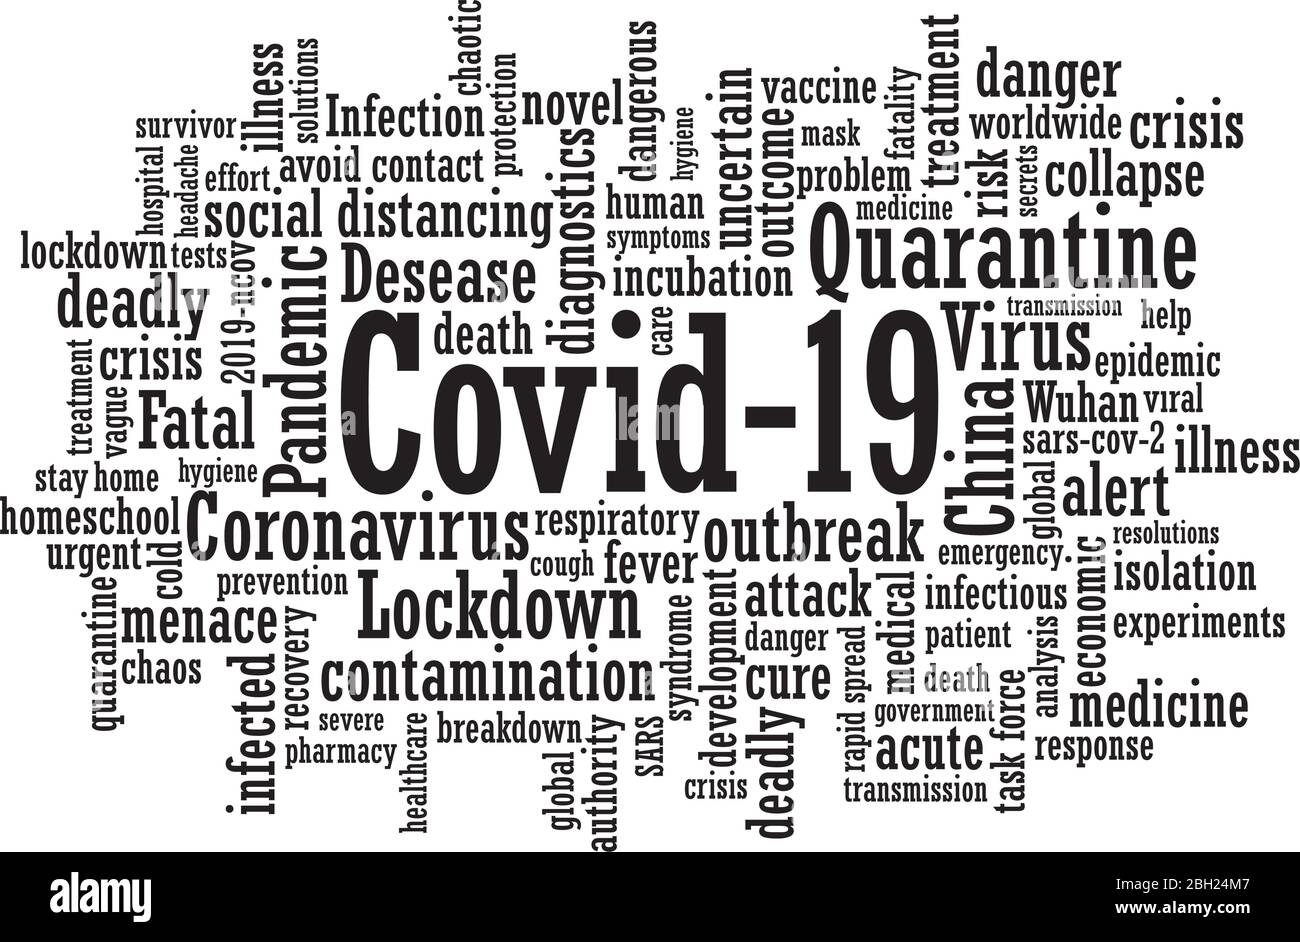 Coronavirus covid-19 mot nuage mot tag design illustration d'arrière-plan en format vectoriel Illustration de Vecteur